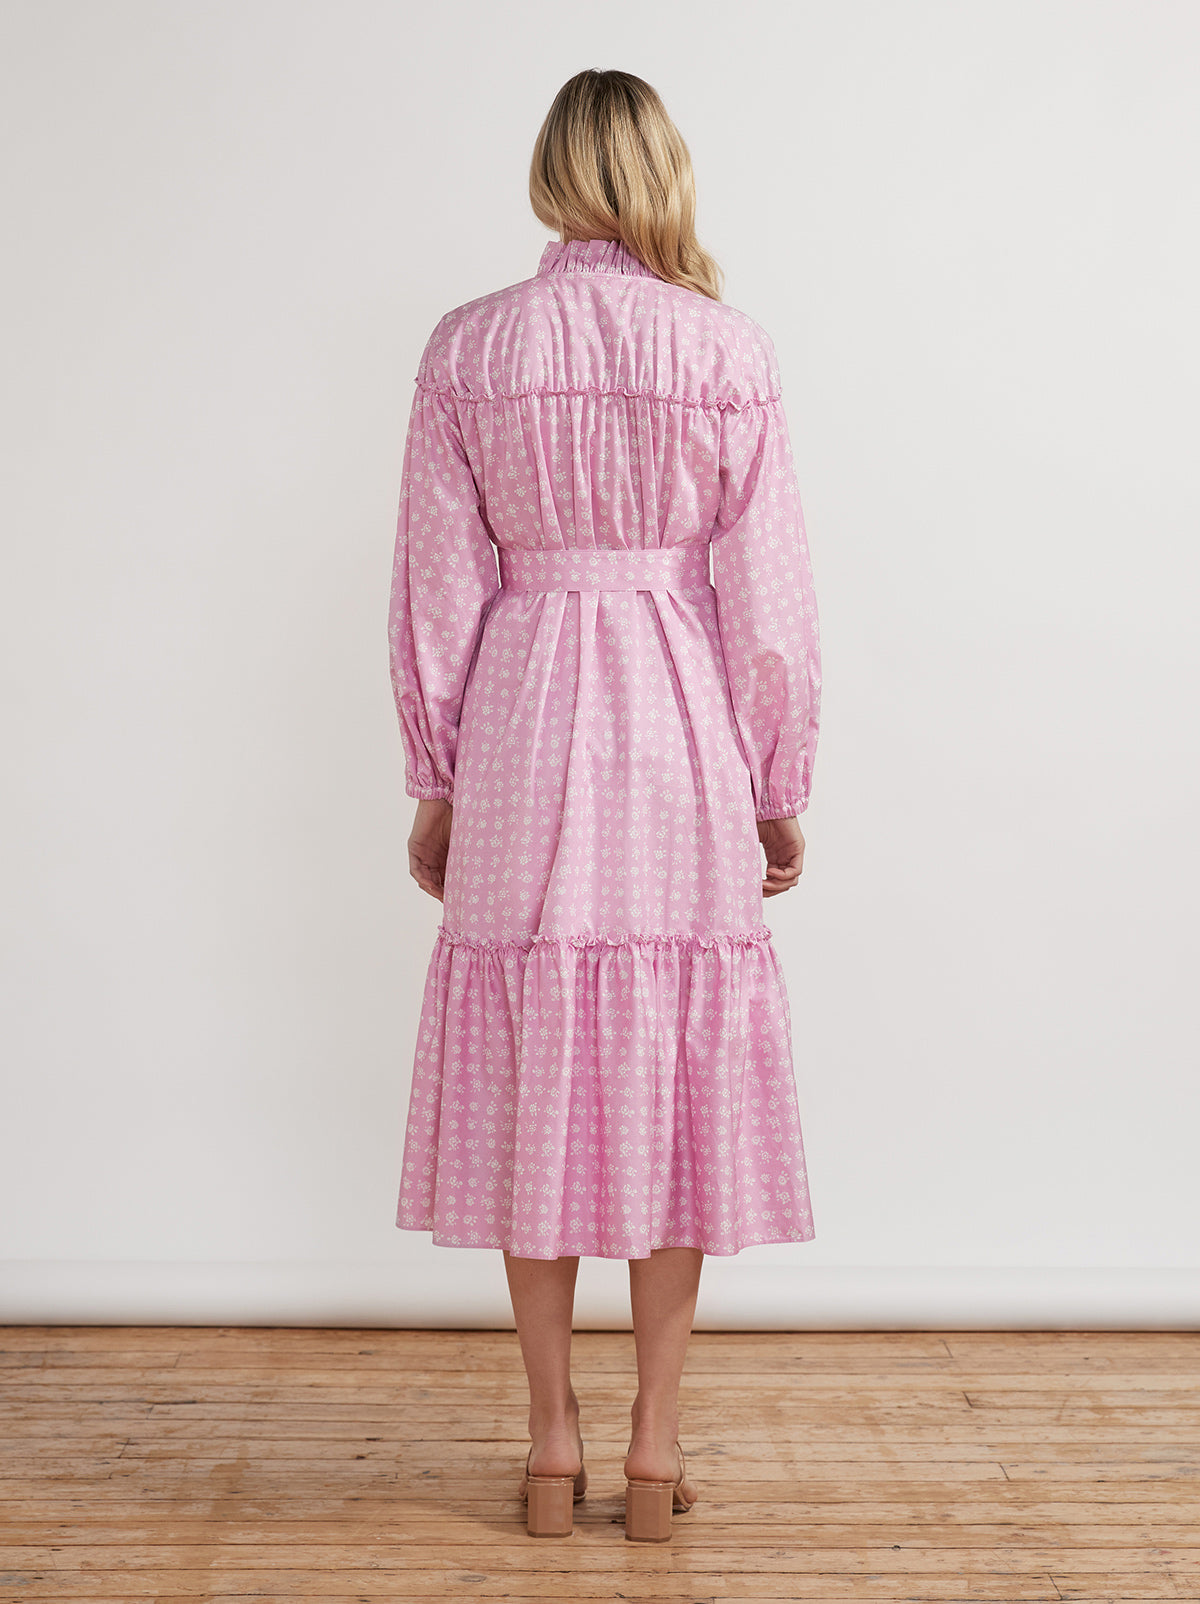 Joni Pink Floral Cotton Dress By KITRI Studio